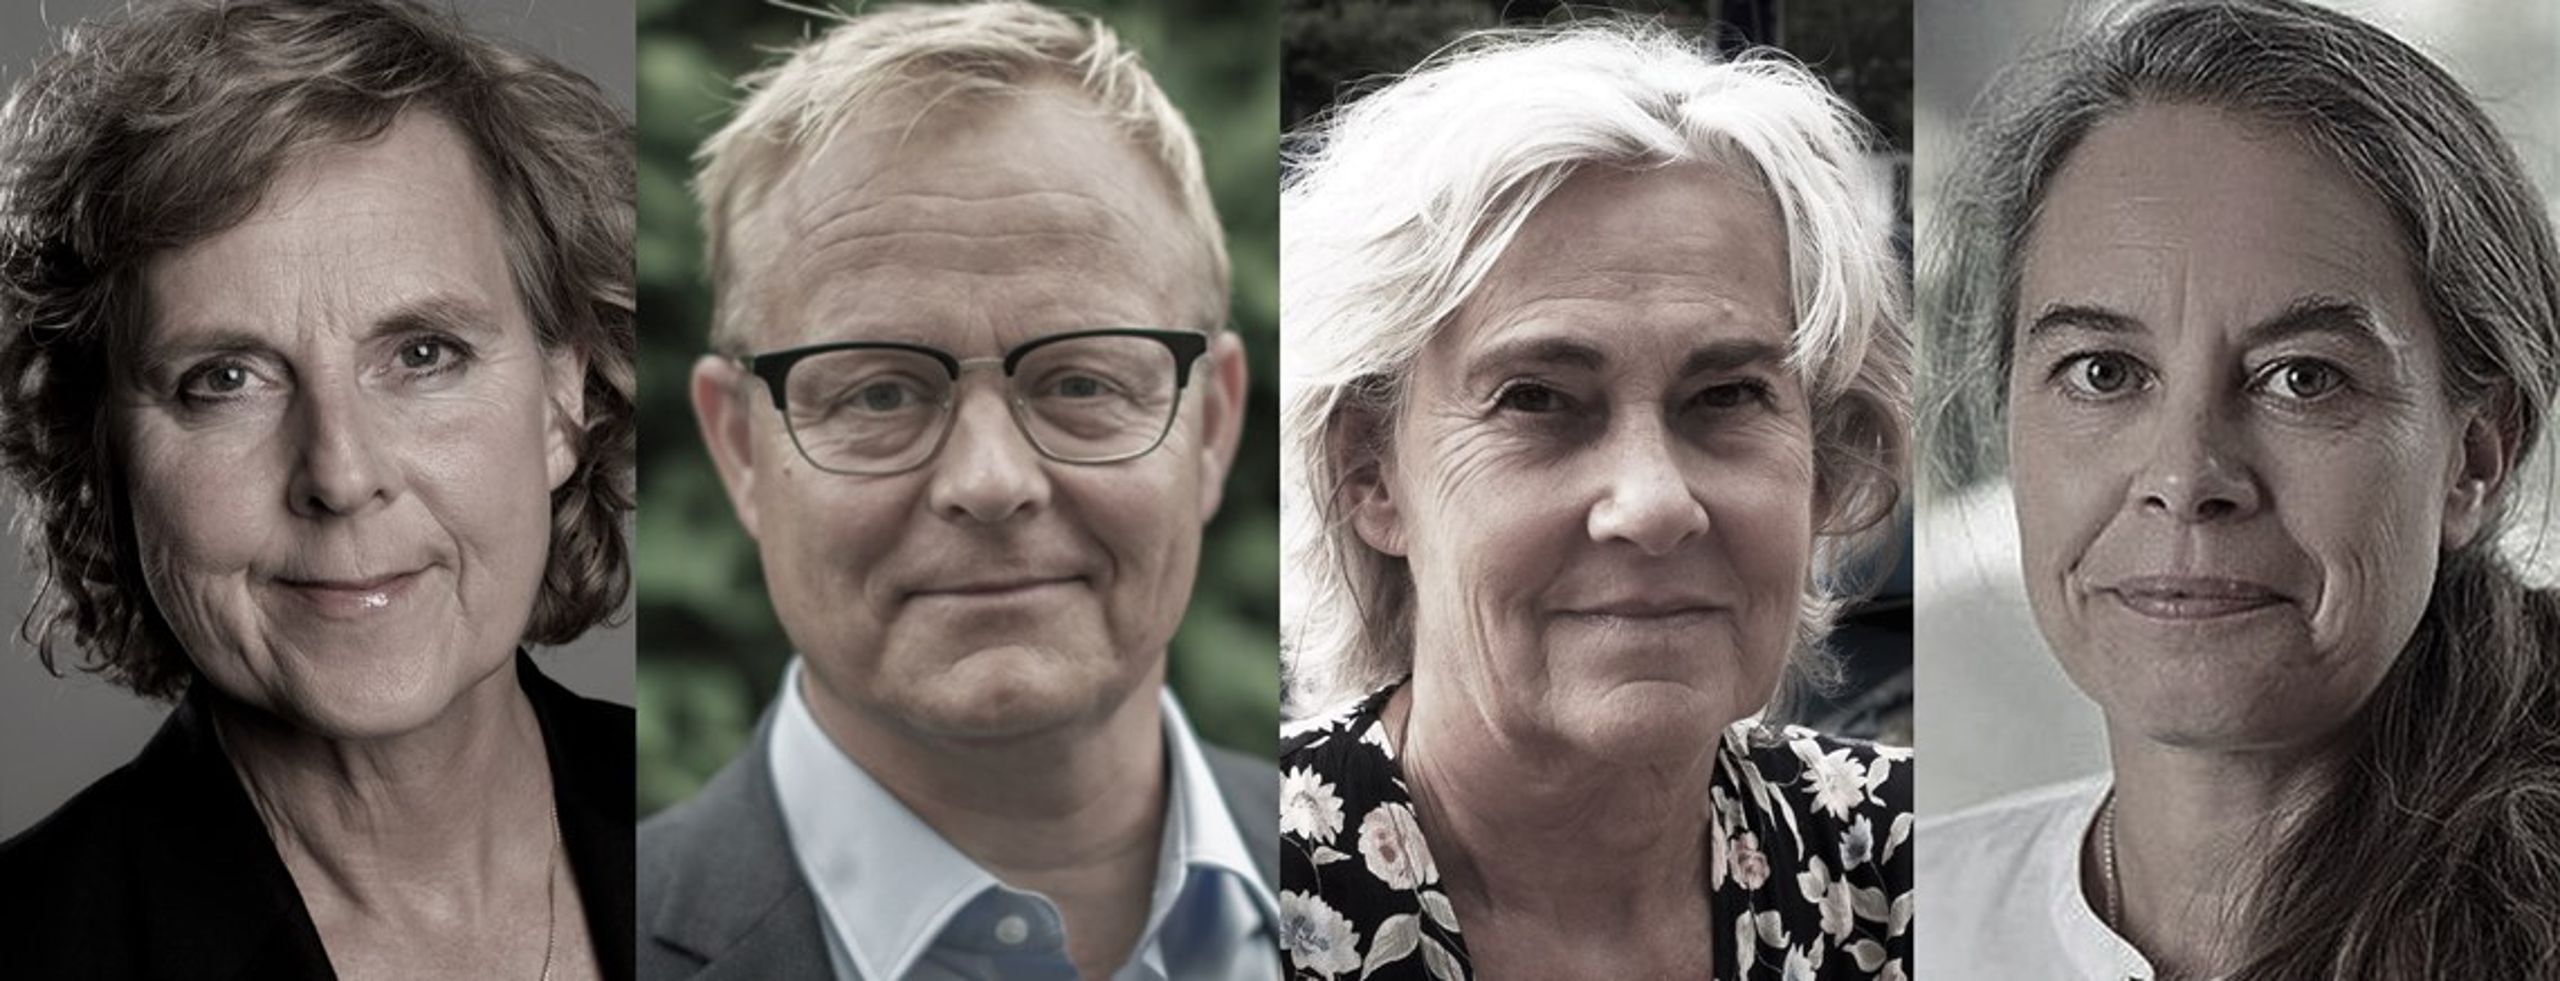 De fire nye kommentarskribenter, der hver uge vil skrive om energi- og klimapolitik er fra venstre: Connie Hedegaard, Sebastian Mernild, Anne Grete Holmsgaard og Anne Højer Simonsen.